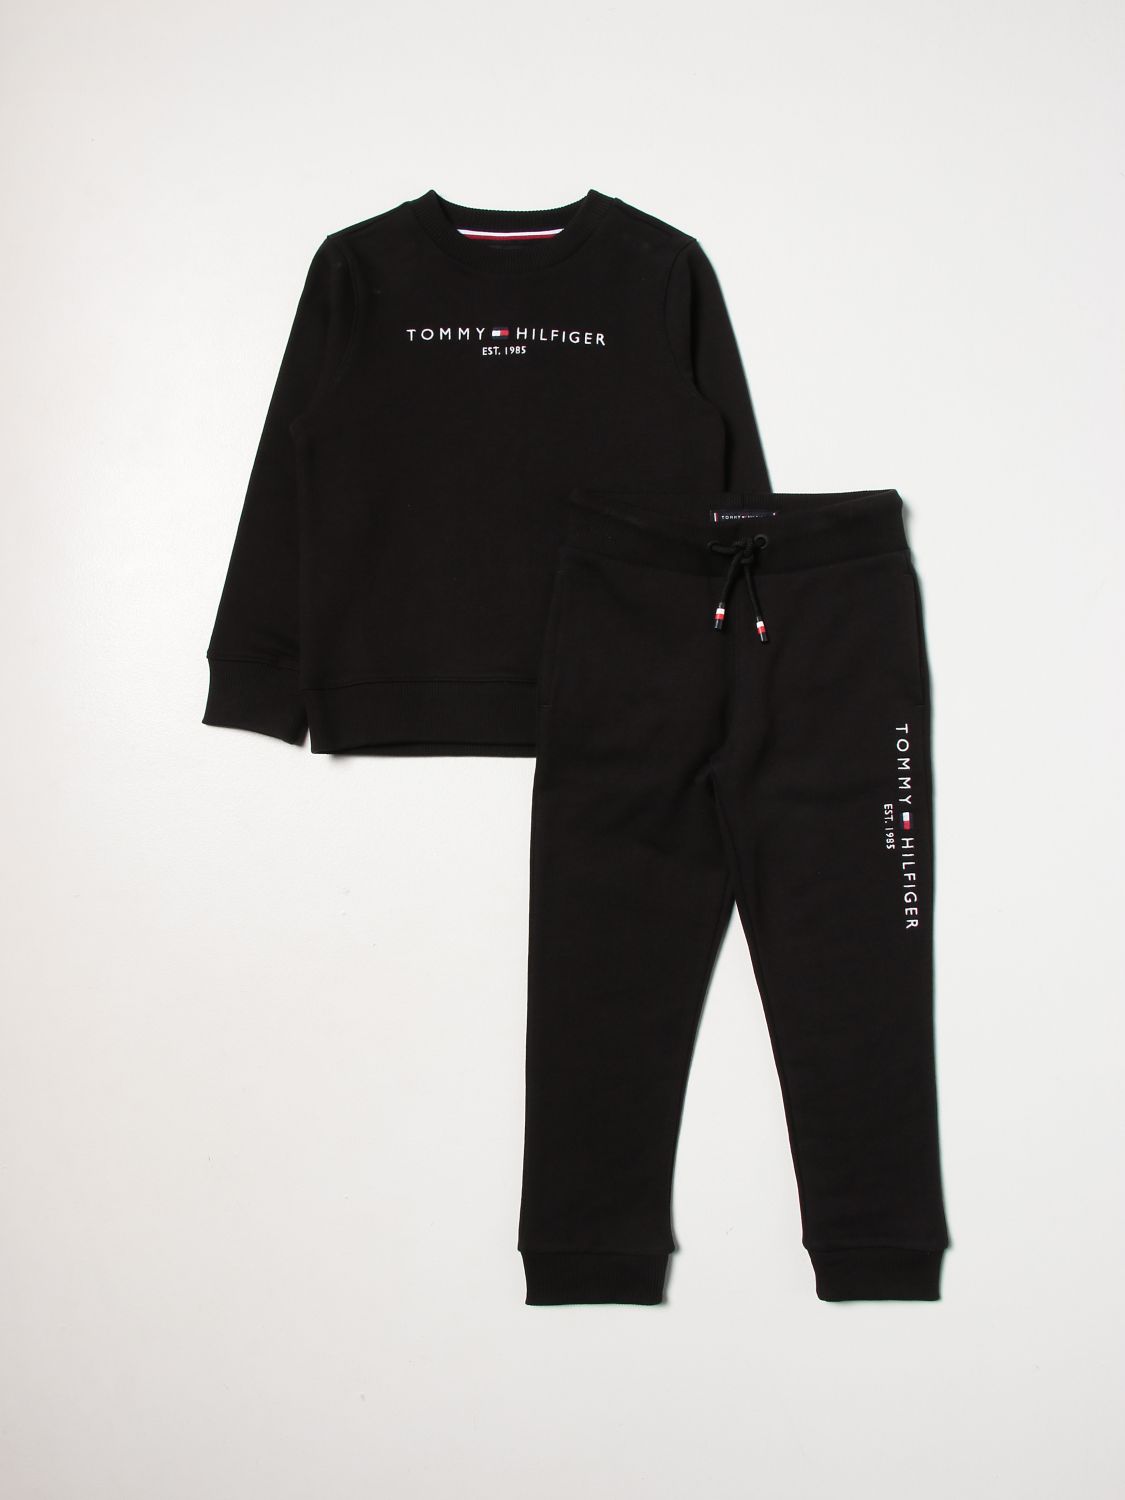 TOMMY HILFIGER: clothing set for boys - Black | Tommy Hilfiger clothing ...